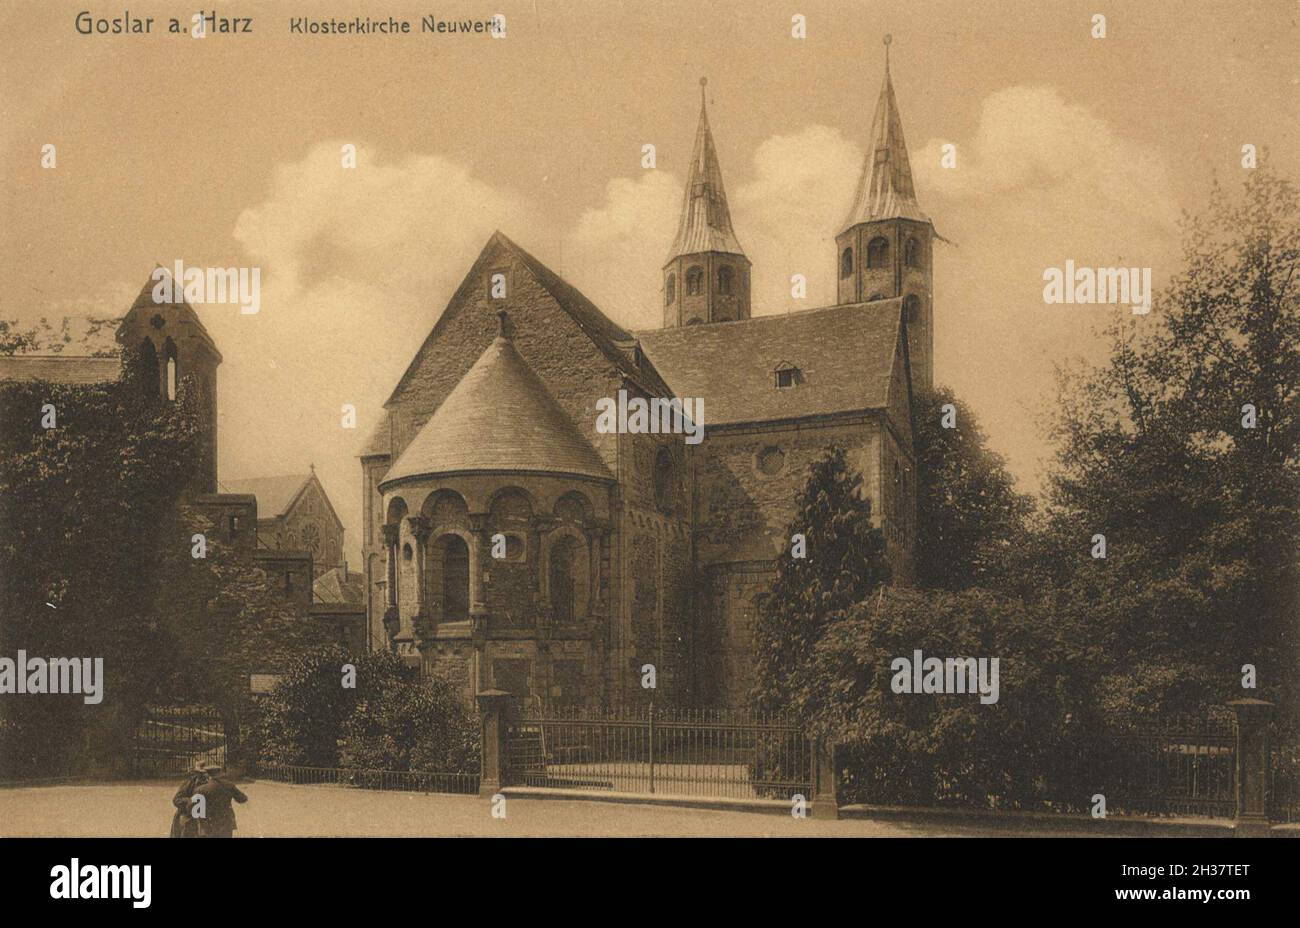 Kloster Neuwerk in Goslar, Niedersachsen, Deutschland, Ansicht von ca 1910, digitale Reproduktion einer gemeinfreien Postkarte Banque D'Images